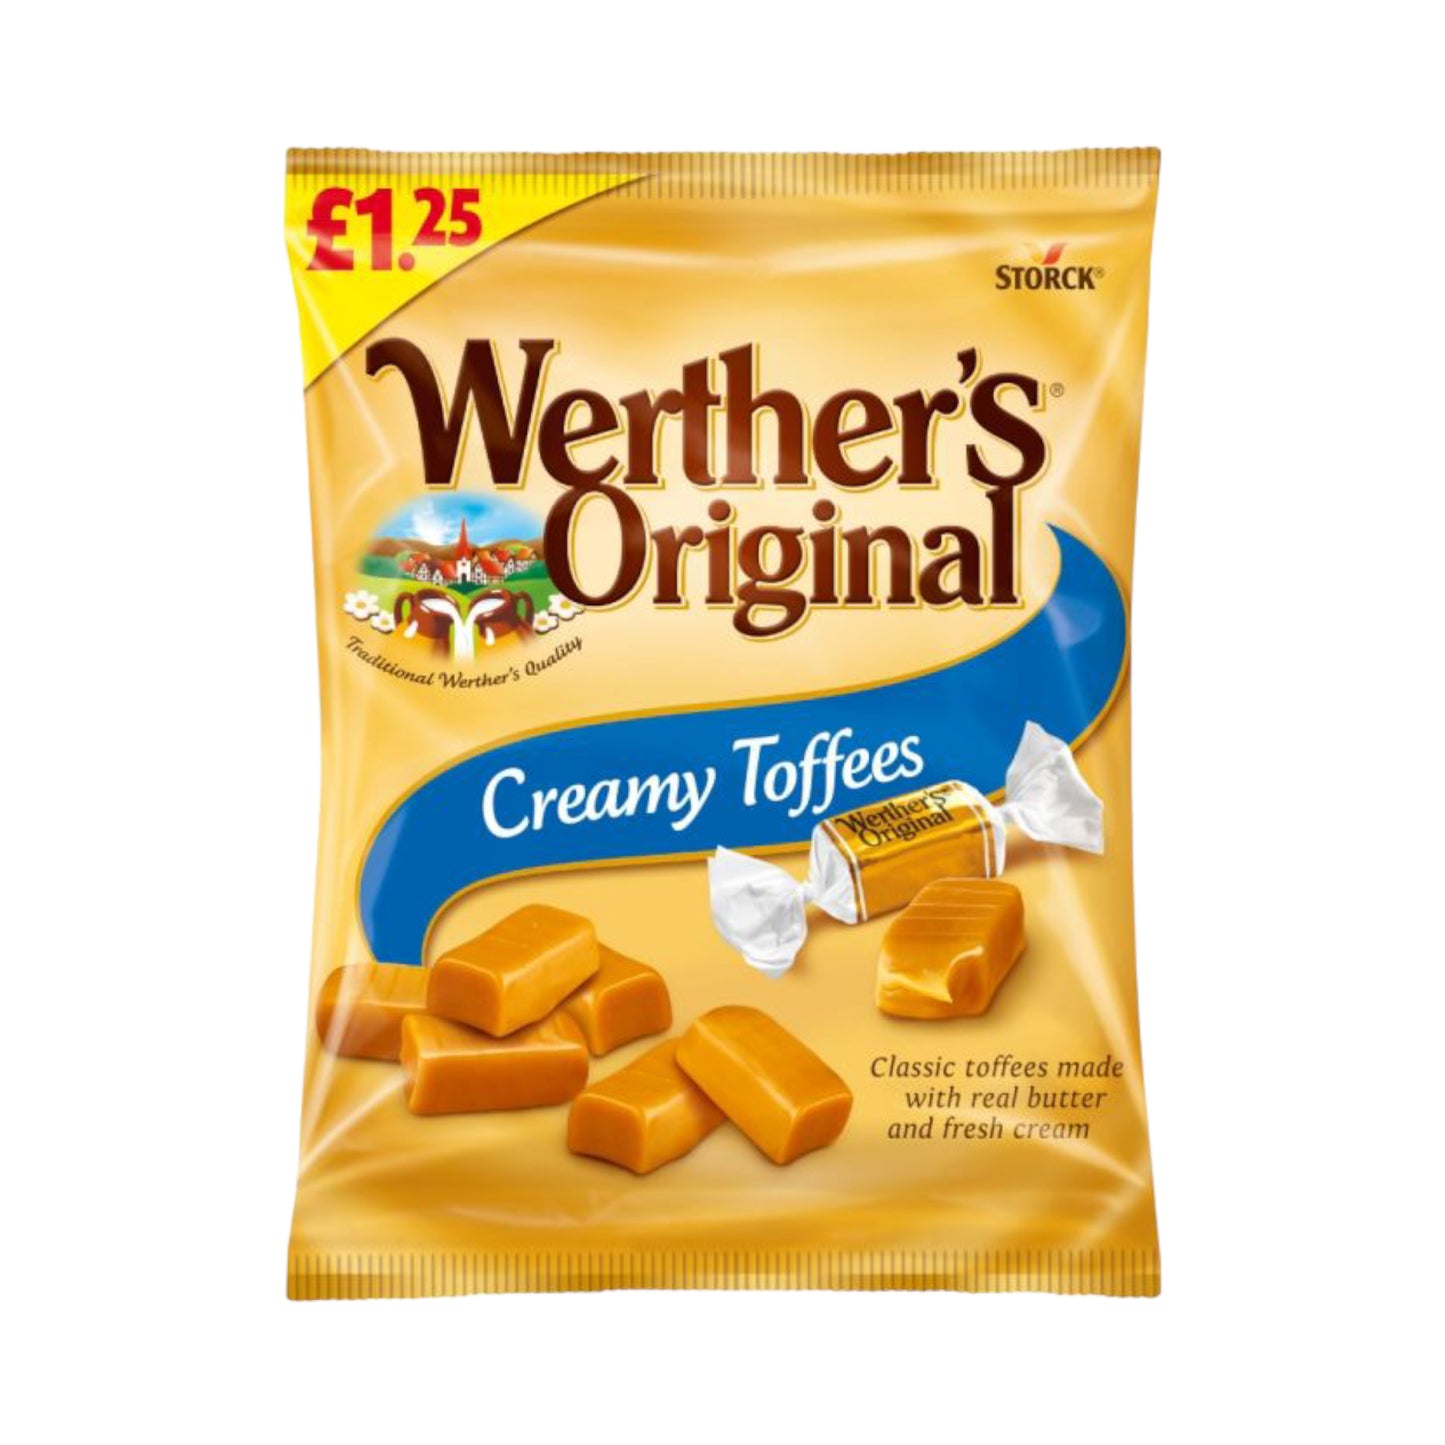 Werther's Original Creamy Toffees - 110g (£1.25 PMP)